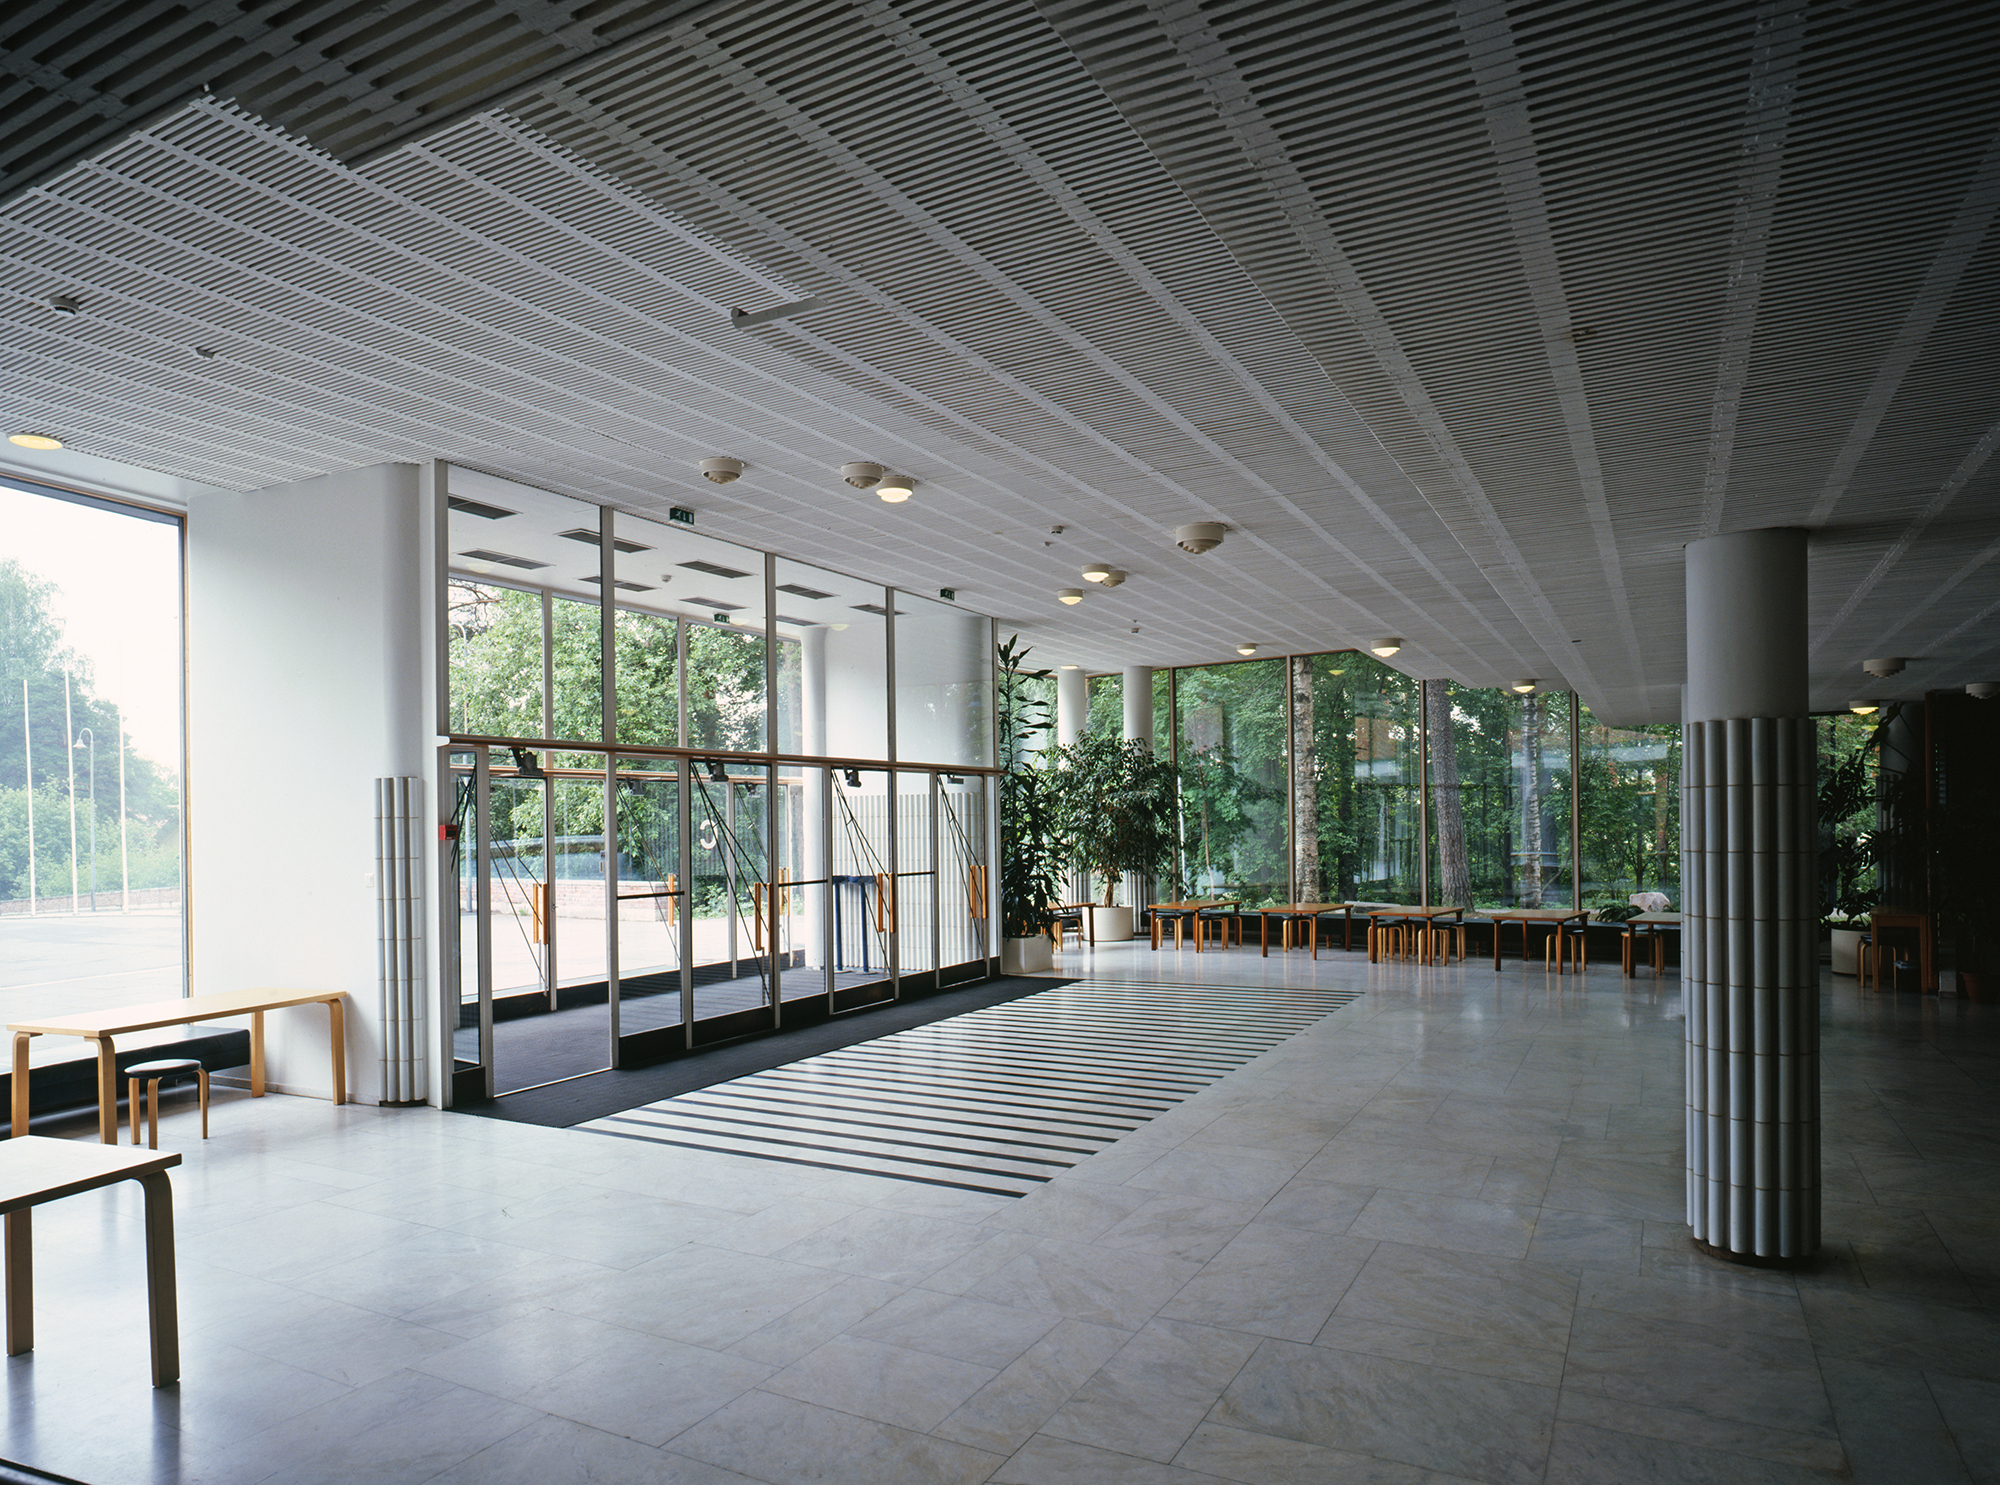 Kasvatusopillisen korkeakoulun (nyk. Jyväskylän yliopisto) päärakennuksen aula 1954-56. Valokuva Maija Holma, Alvar Aalto -museo. © Alvar Aalto -säätiö.